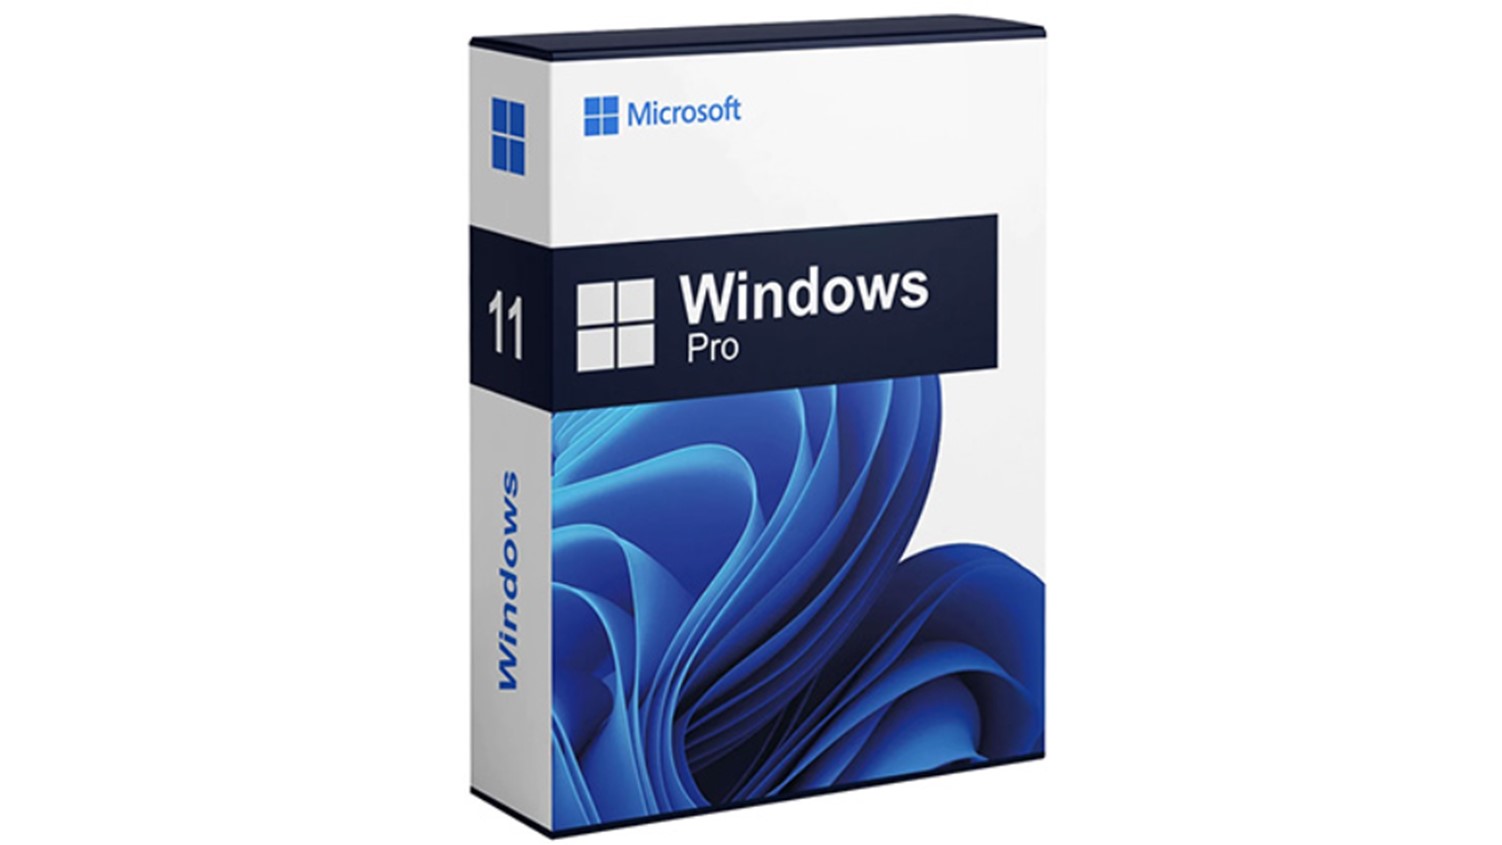 Windows 11 Pro Product Image